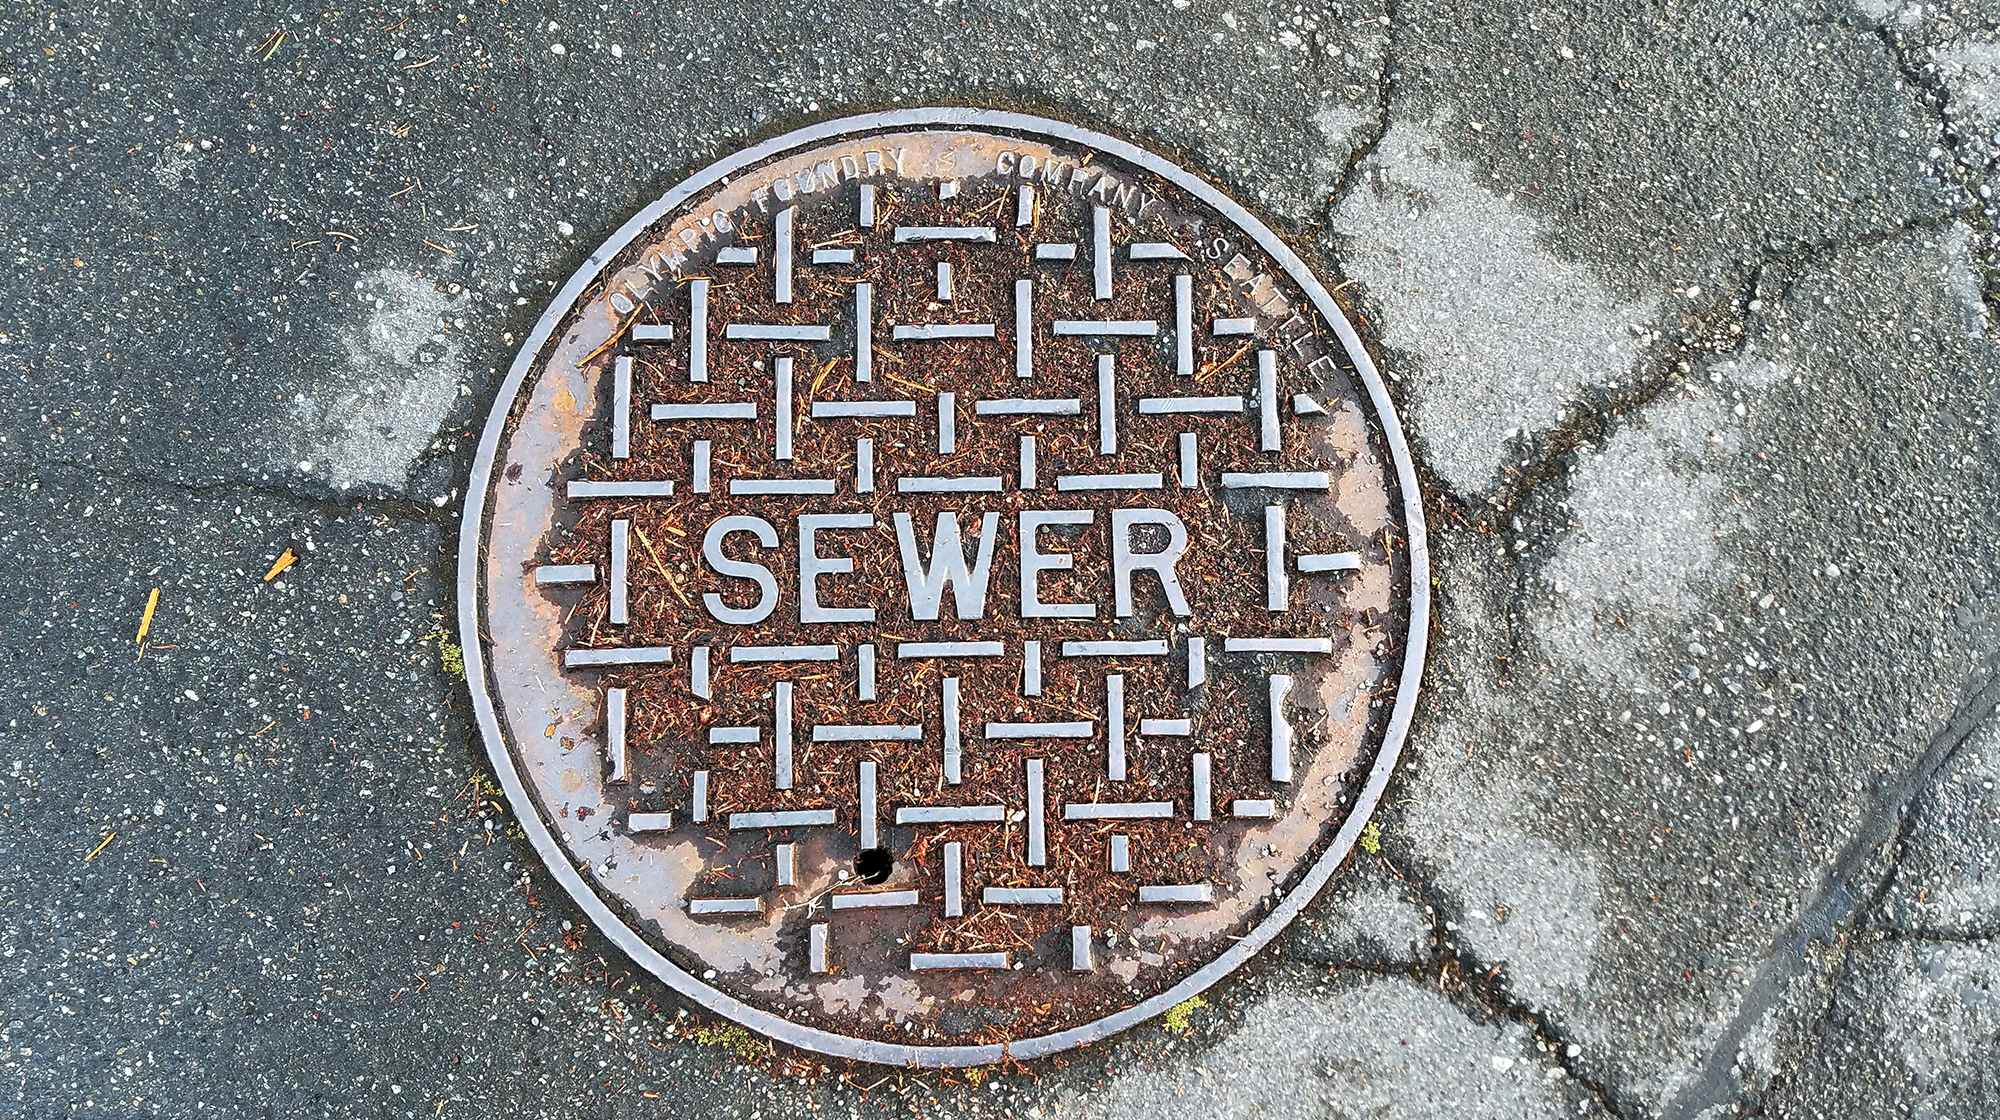 Sewer System Design